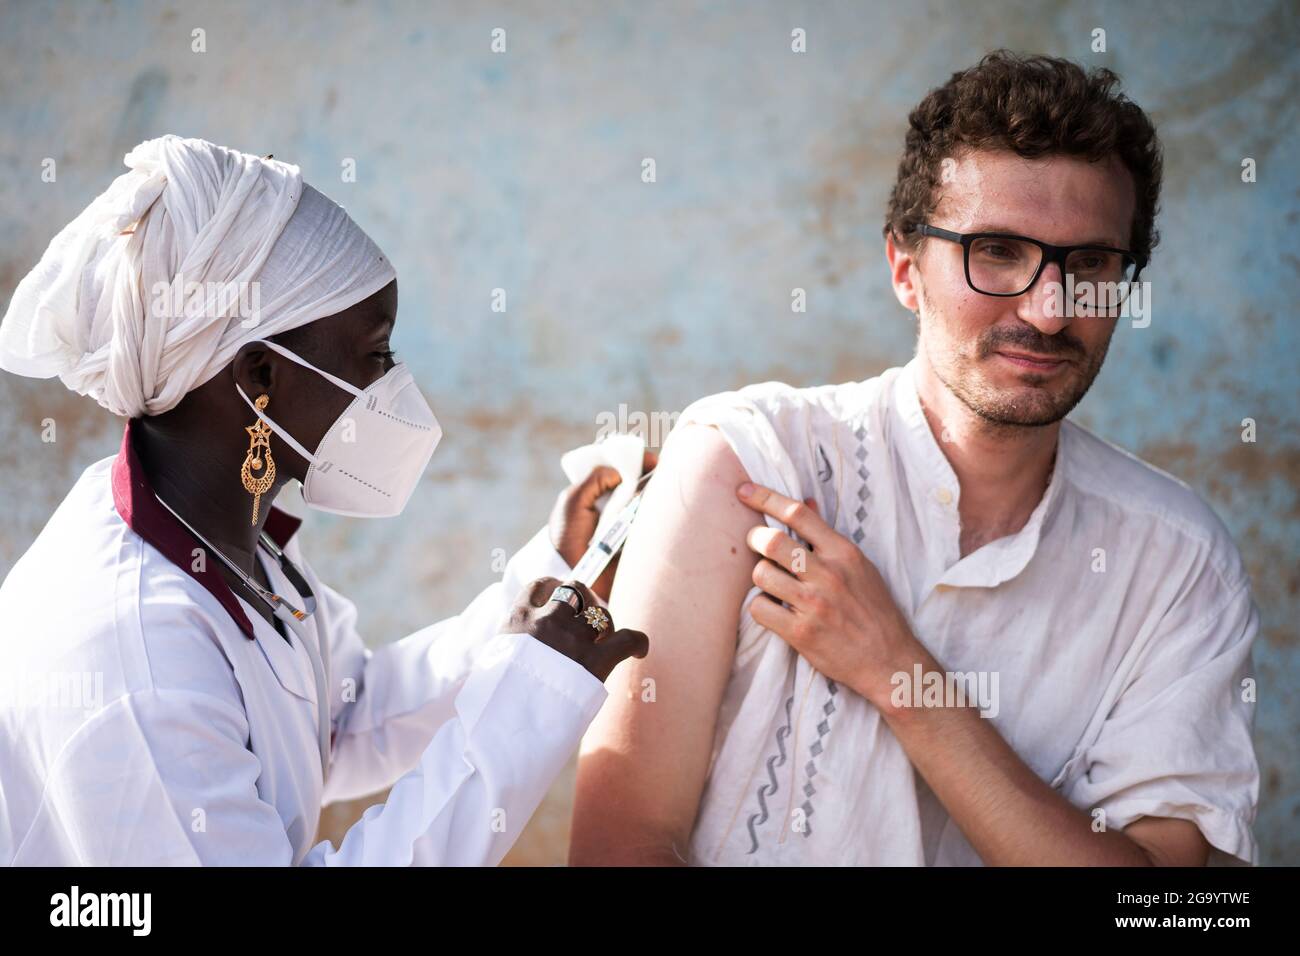 In questa immagine, un giovane adulto caucasico con un'espressione tesa sul viso viene iniettato un vaccino sparato nel braccio destro da un'infermiera nera che indossa una fa Foto Stock